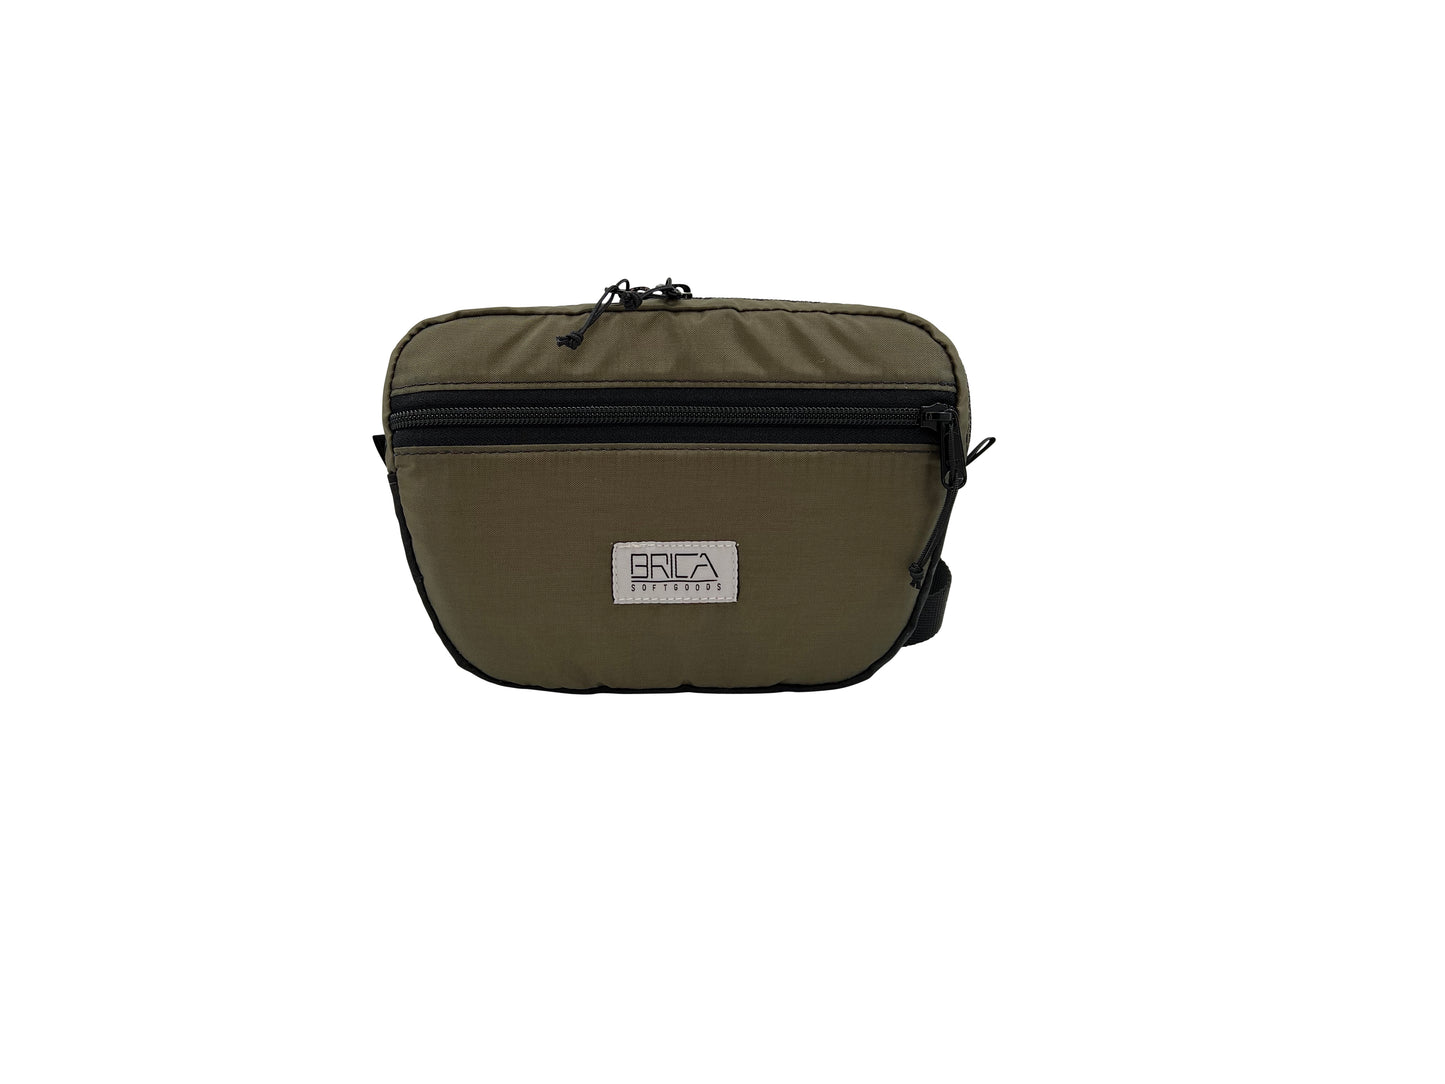 TMC Low Waist Pack (Ranger Green)